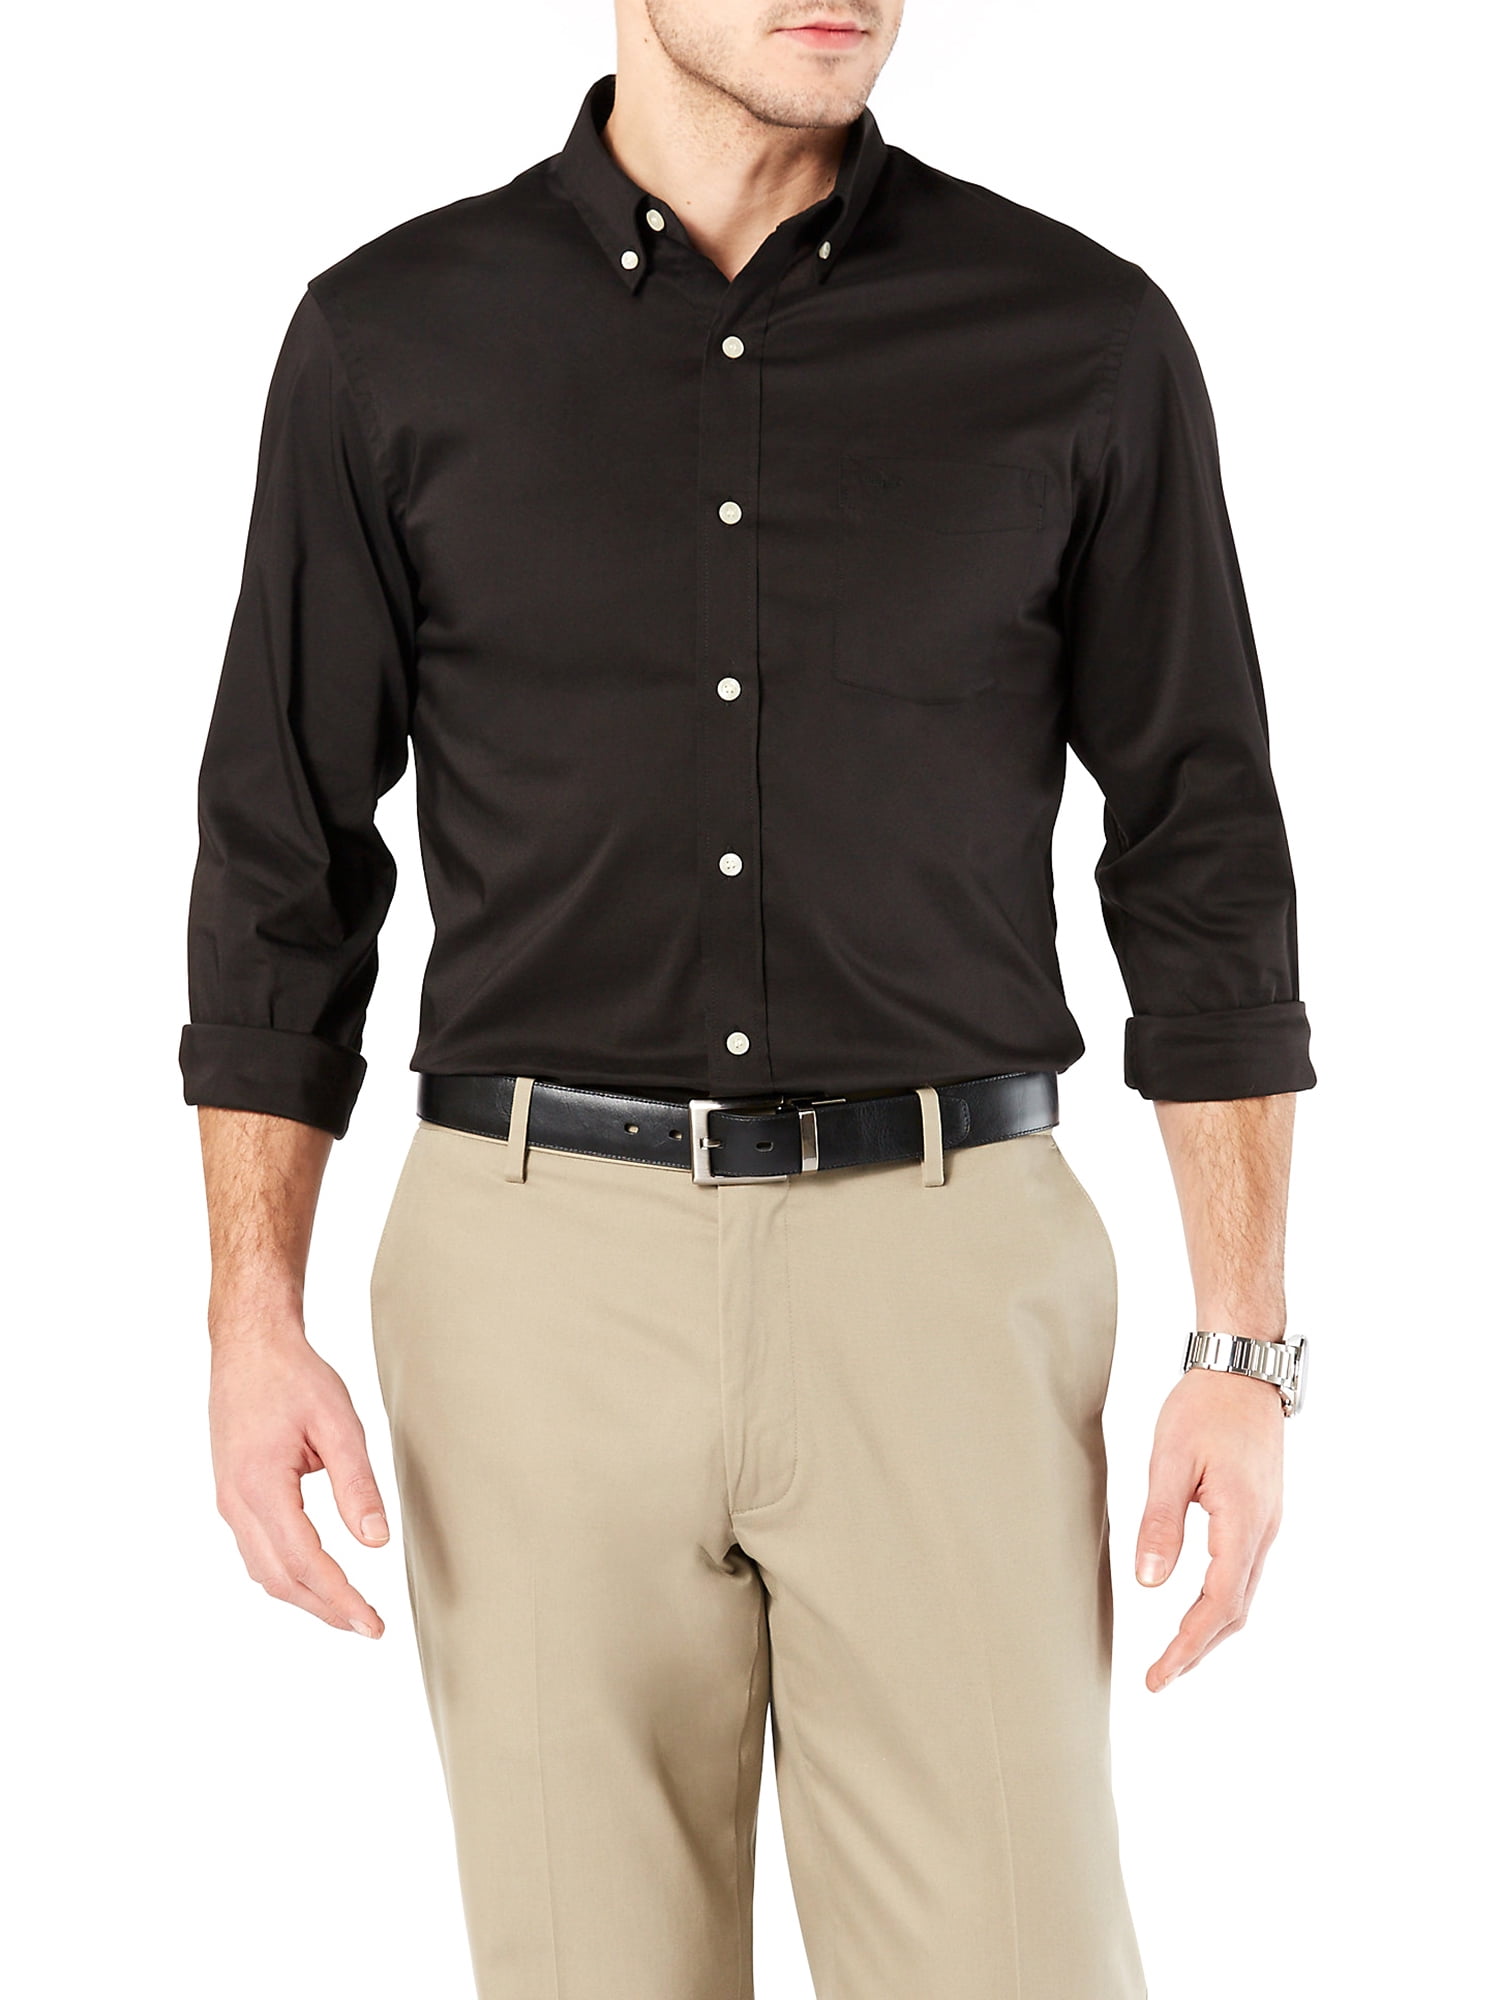 Dockers Men's Long Sleeve Comfort Flex Button Down Shirt